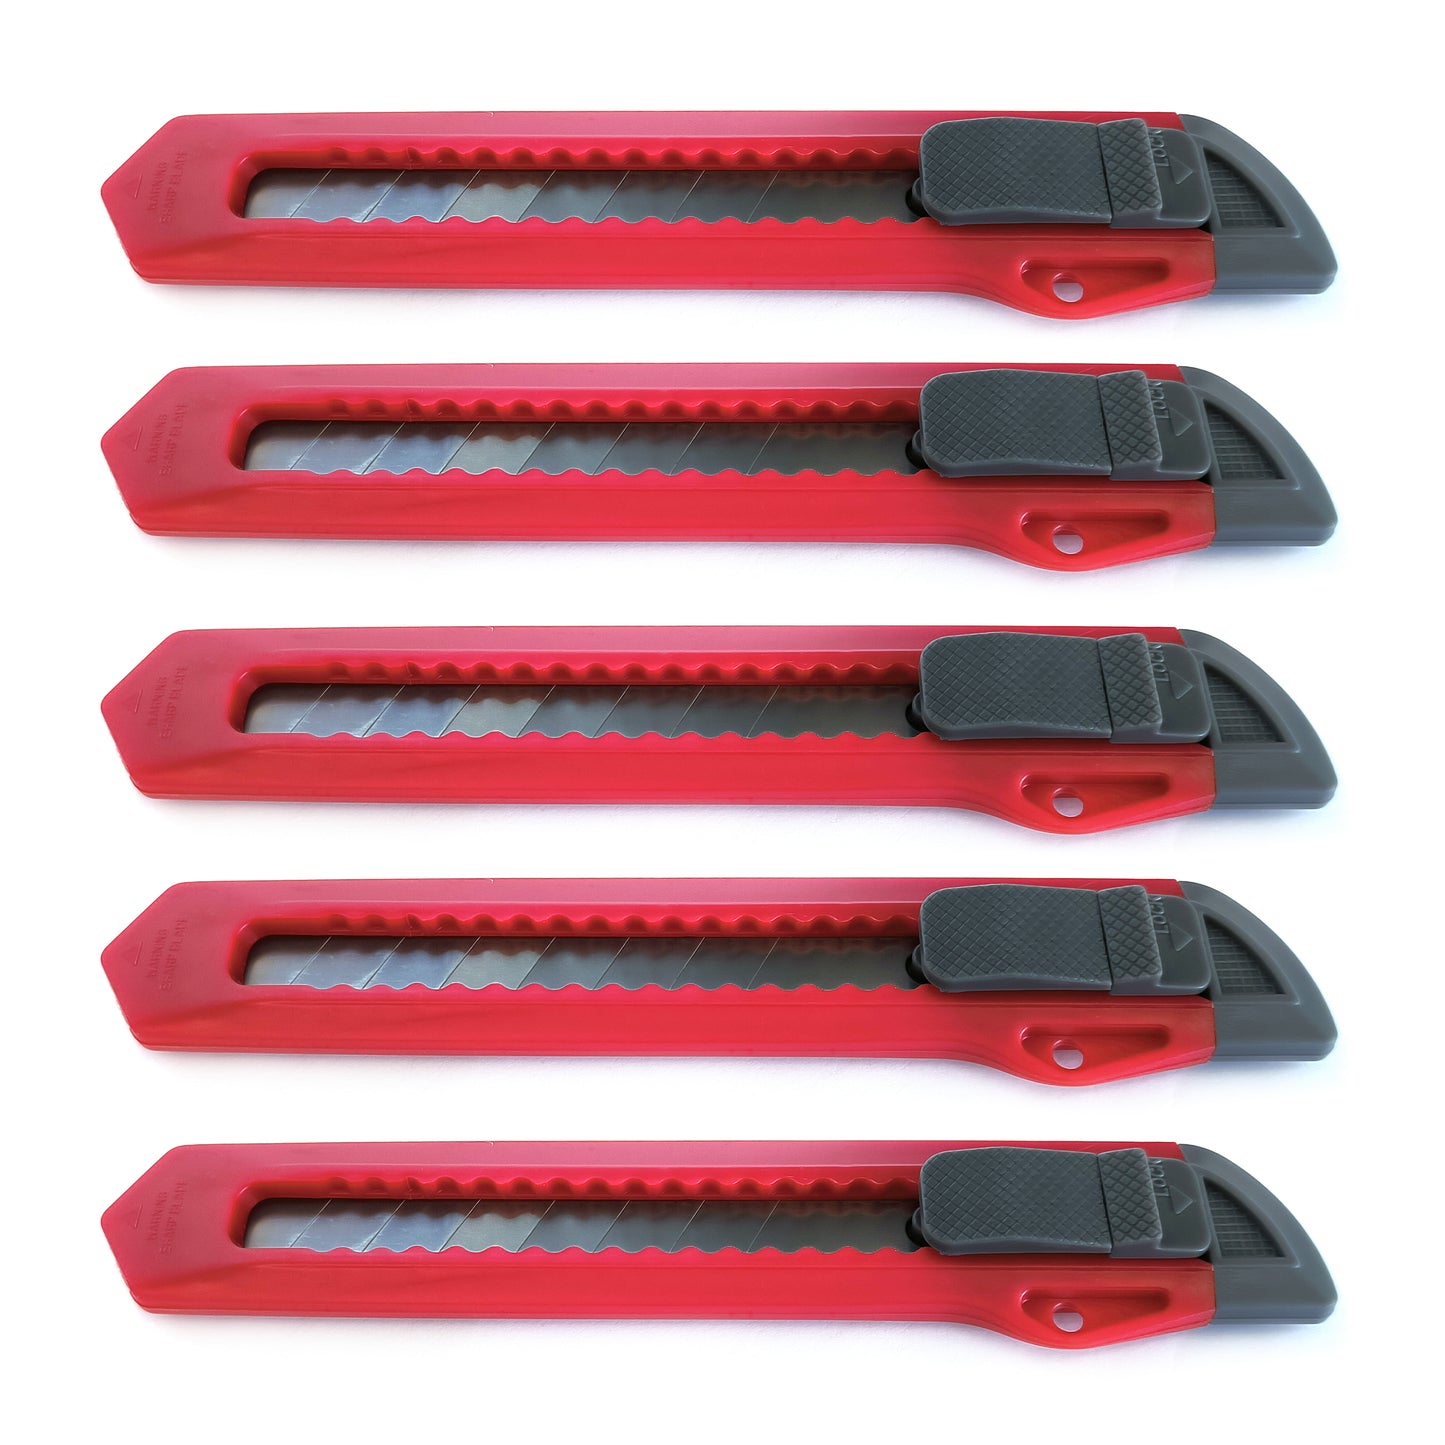 5x Cuttermesser 9-18mm Teppichmesser Paketmesser Kartonmesser Messer Klingen